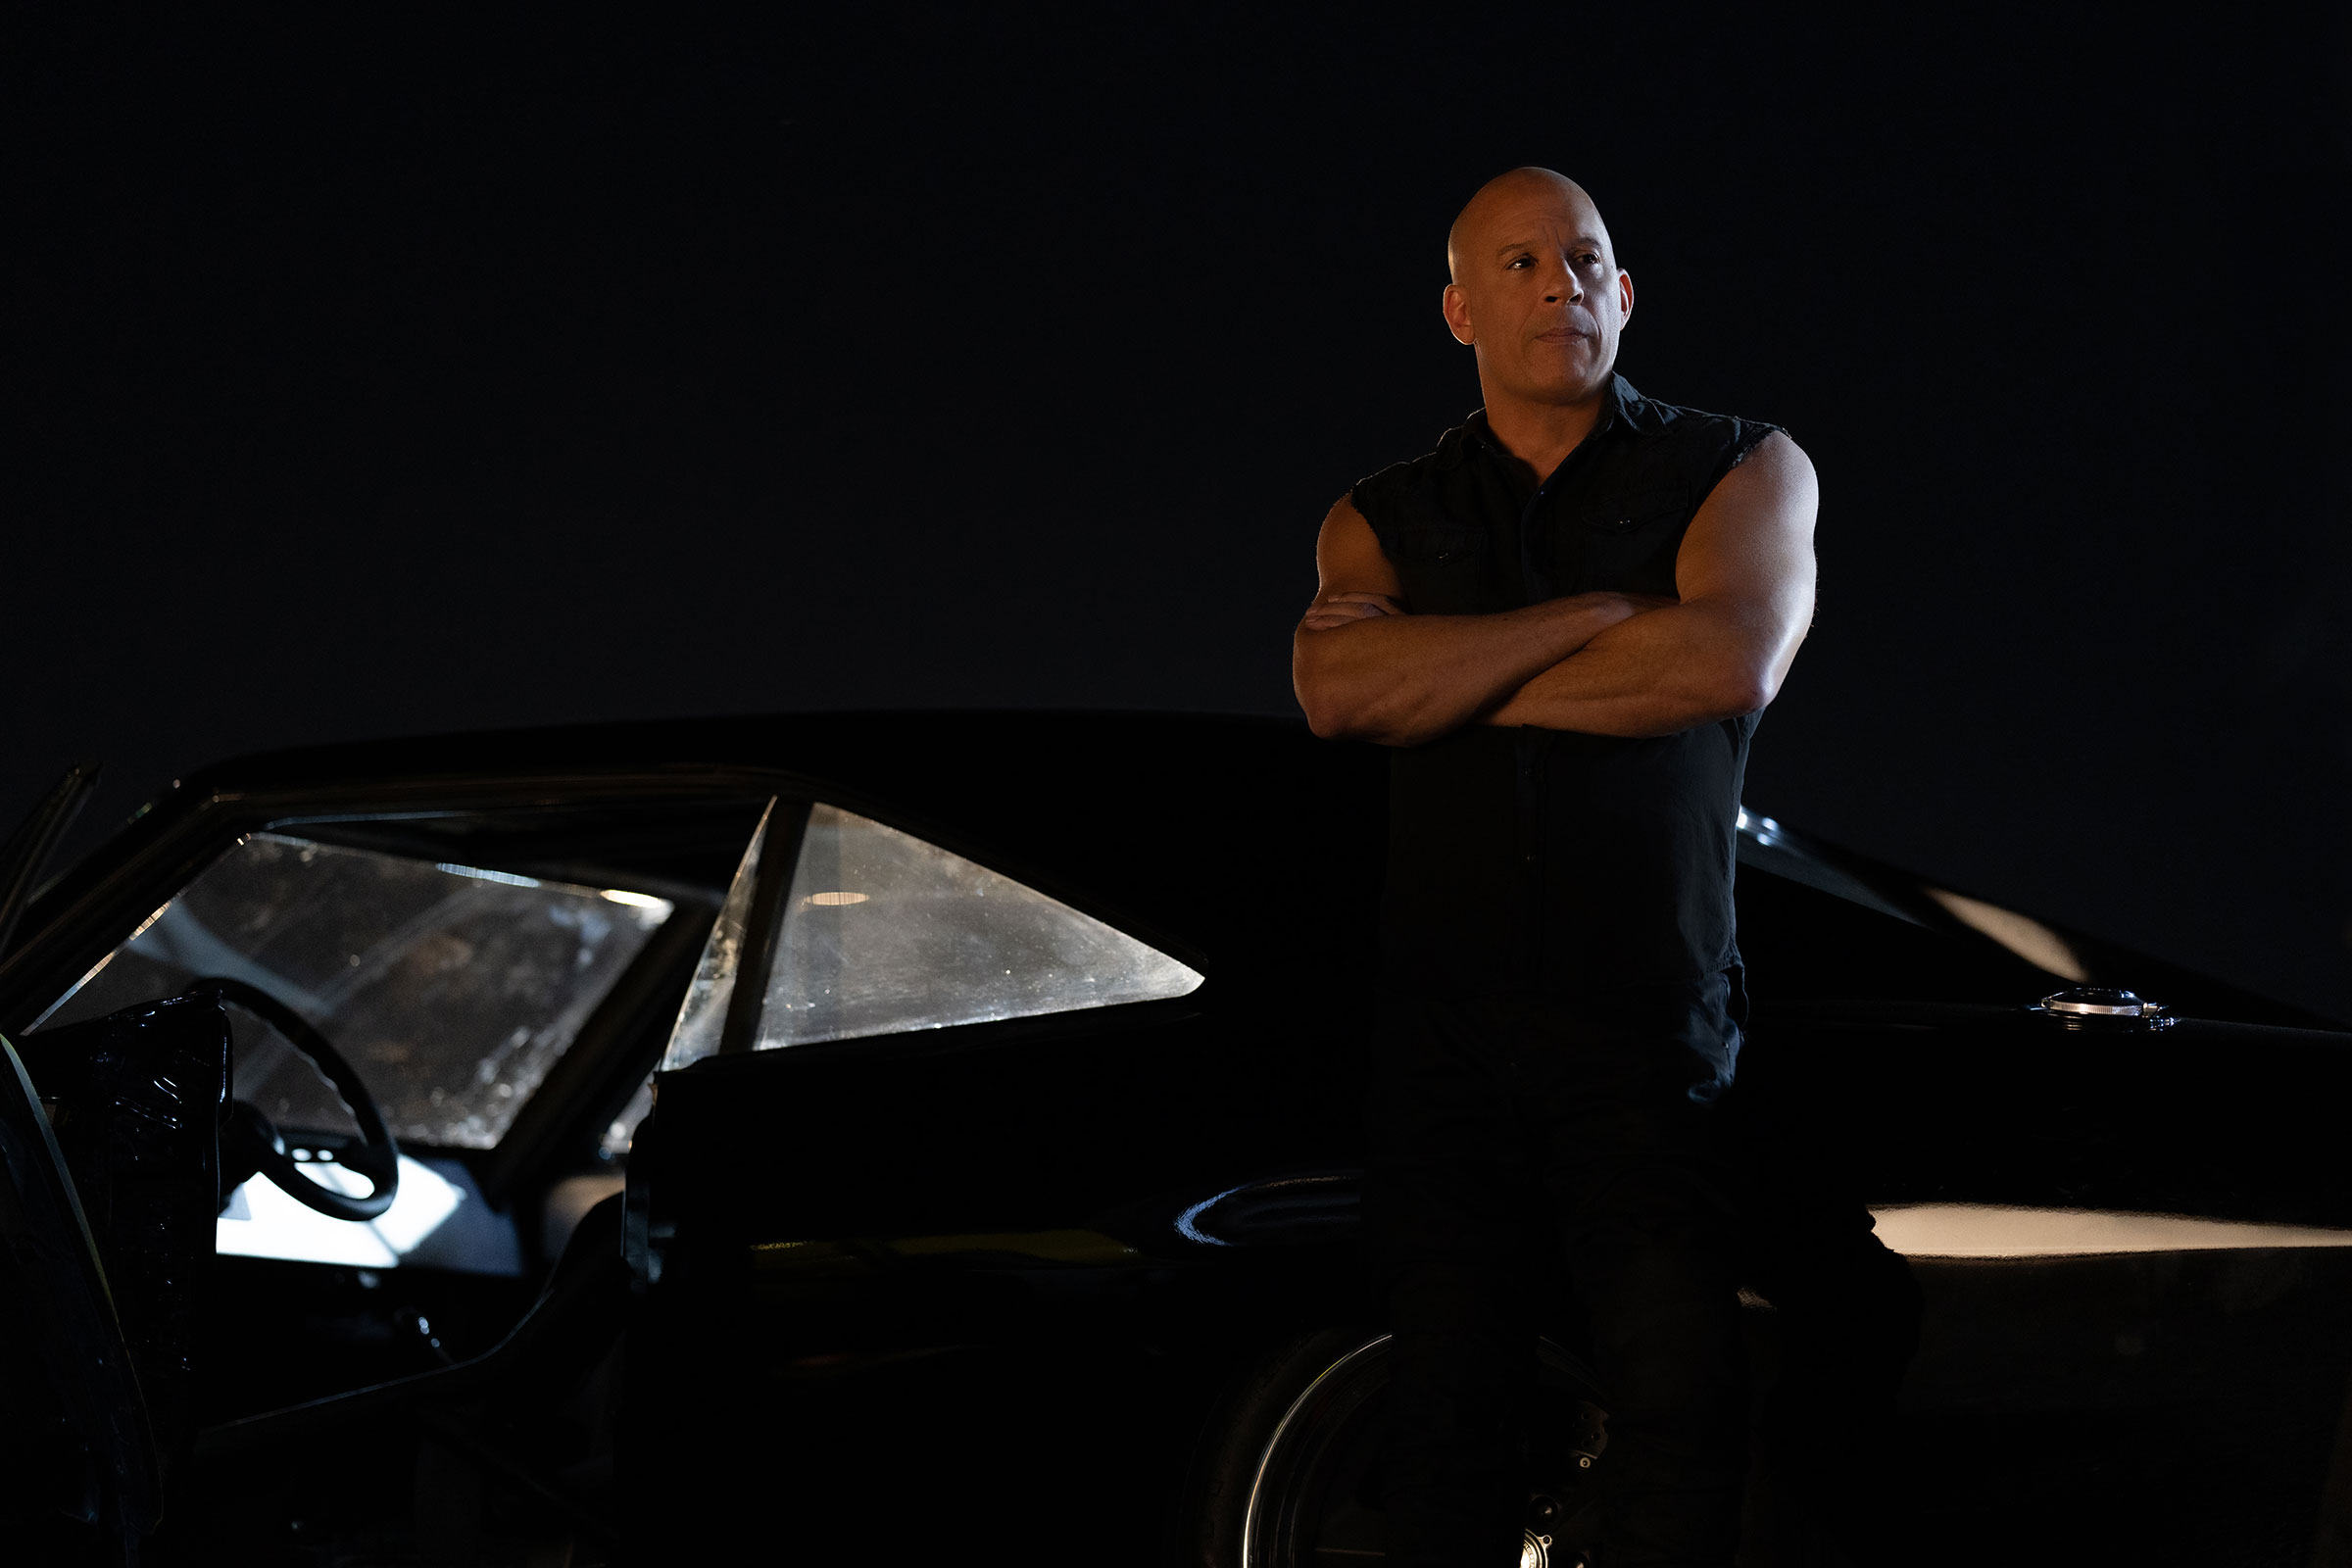 Vin Diesel as Dom in <em></p>
<p>Rapide x</em> (Peter Mountain – Photos de l’universe) “/></p>
<p> <em></em><br />
Peter Mountain – Photos universelles</p>
<h3><span id=